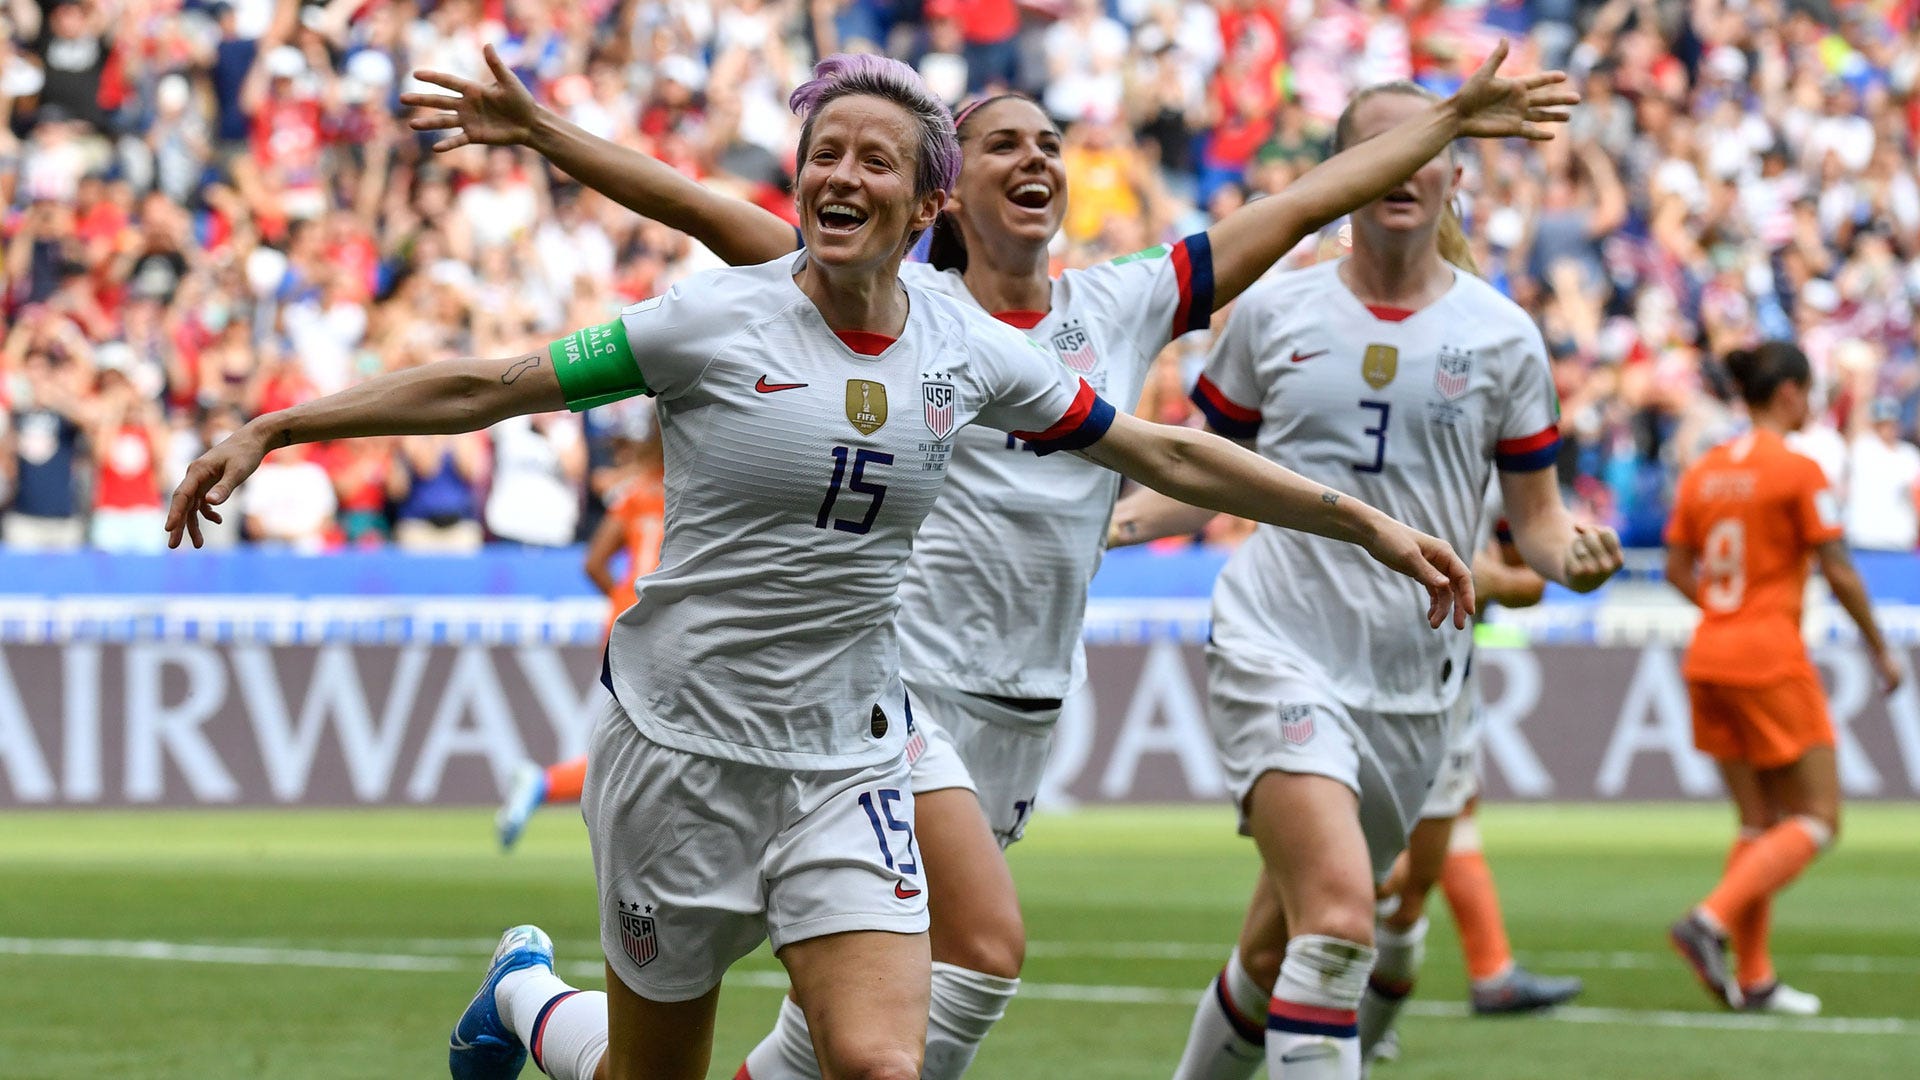 USA liegen Megan Rapinoe und Co. nach WM-Titel zu Füßen: "Jetzt gebt ihnen das Geld!"